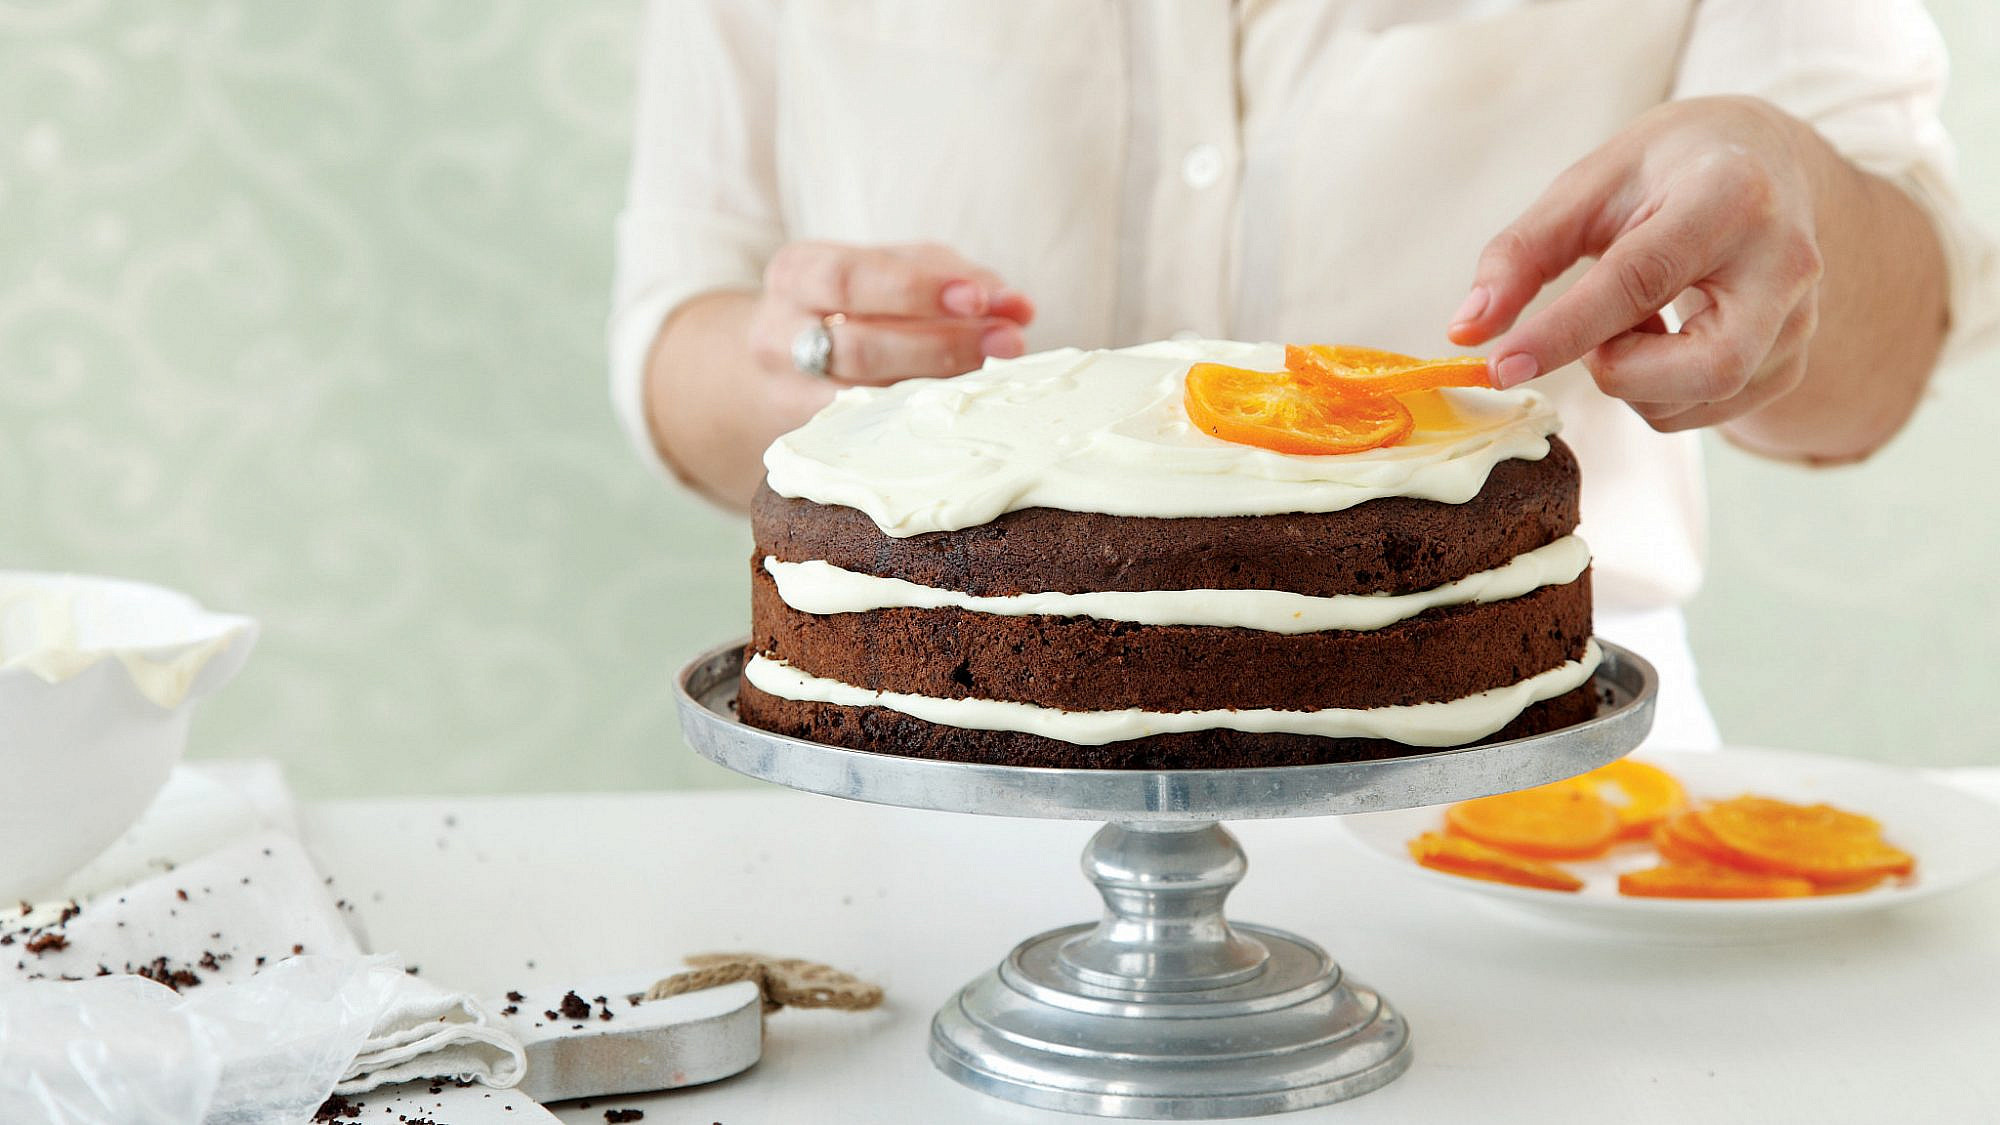 עוגת שכבות שוקולד עם פטיסייר תפוזים של חן שוקרון. צילום: דניה ויינר. סטיילינג: דיאנה לינדר